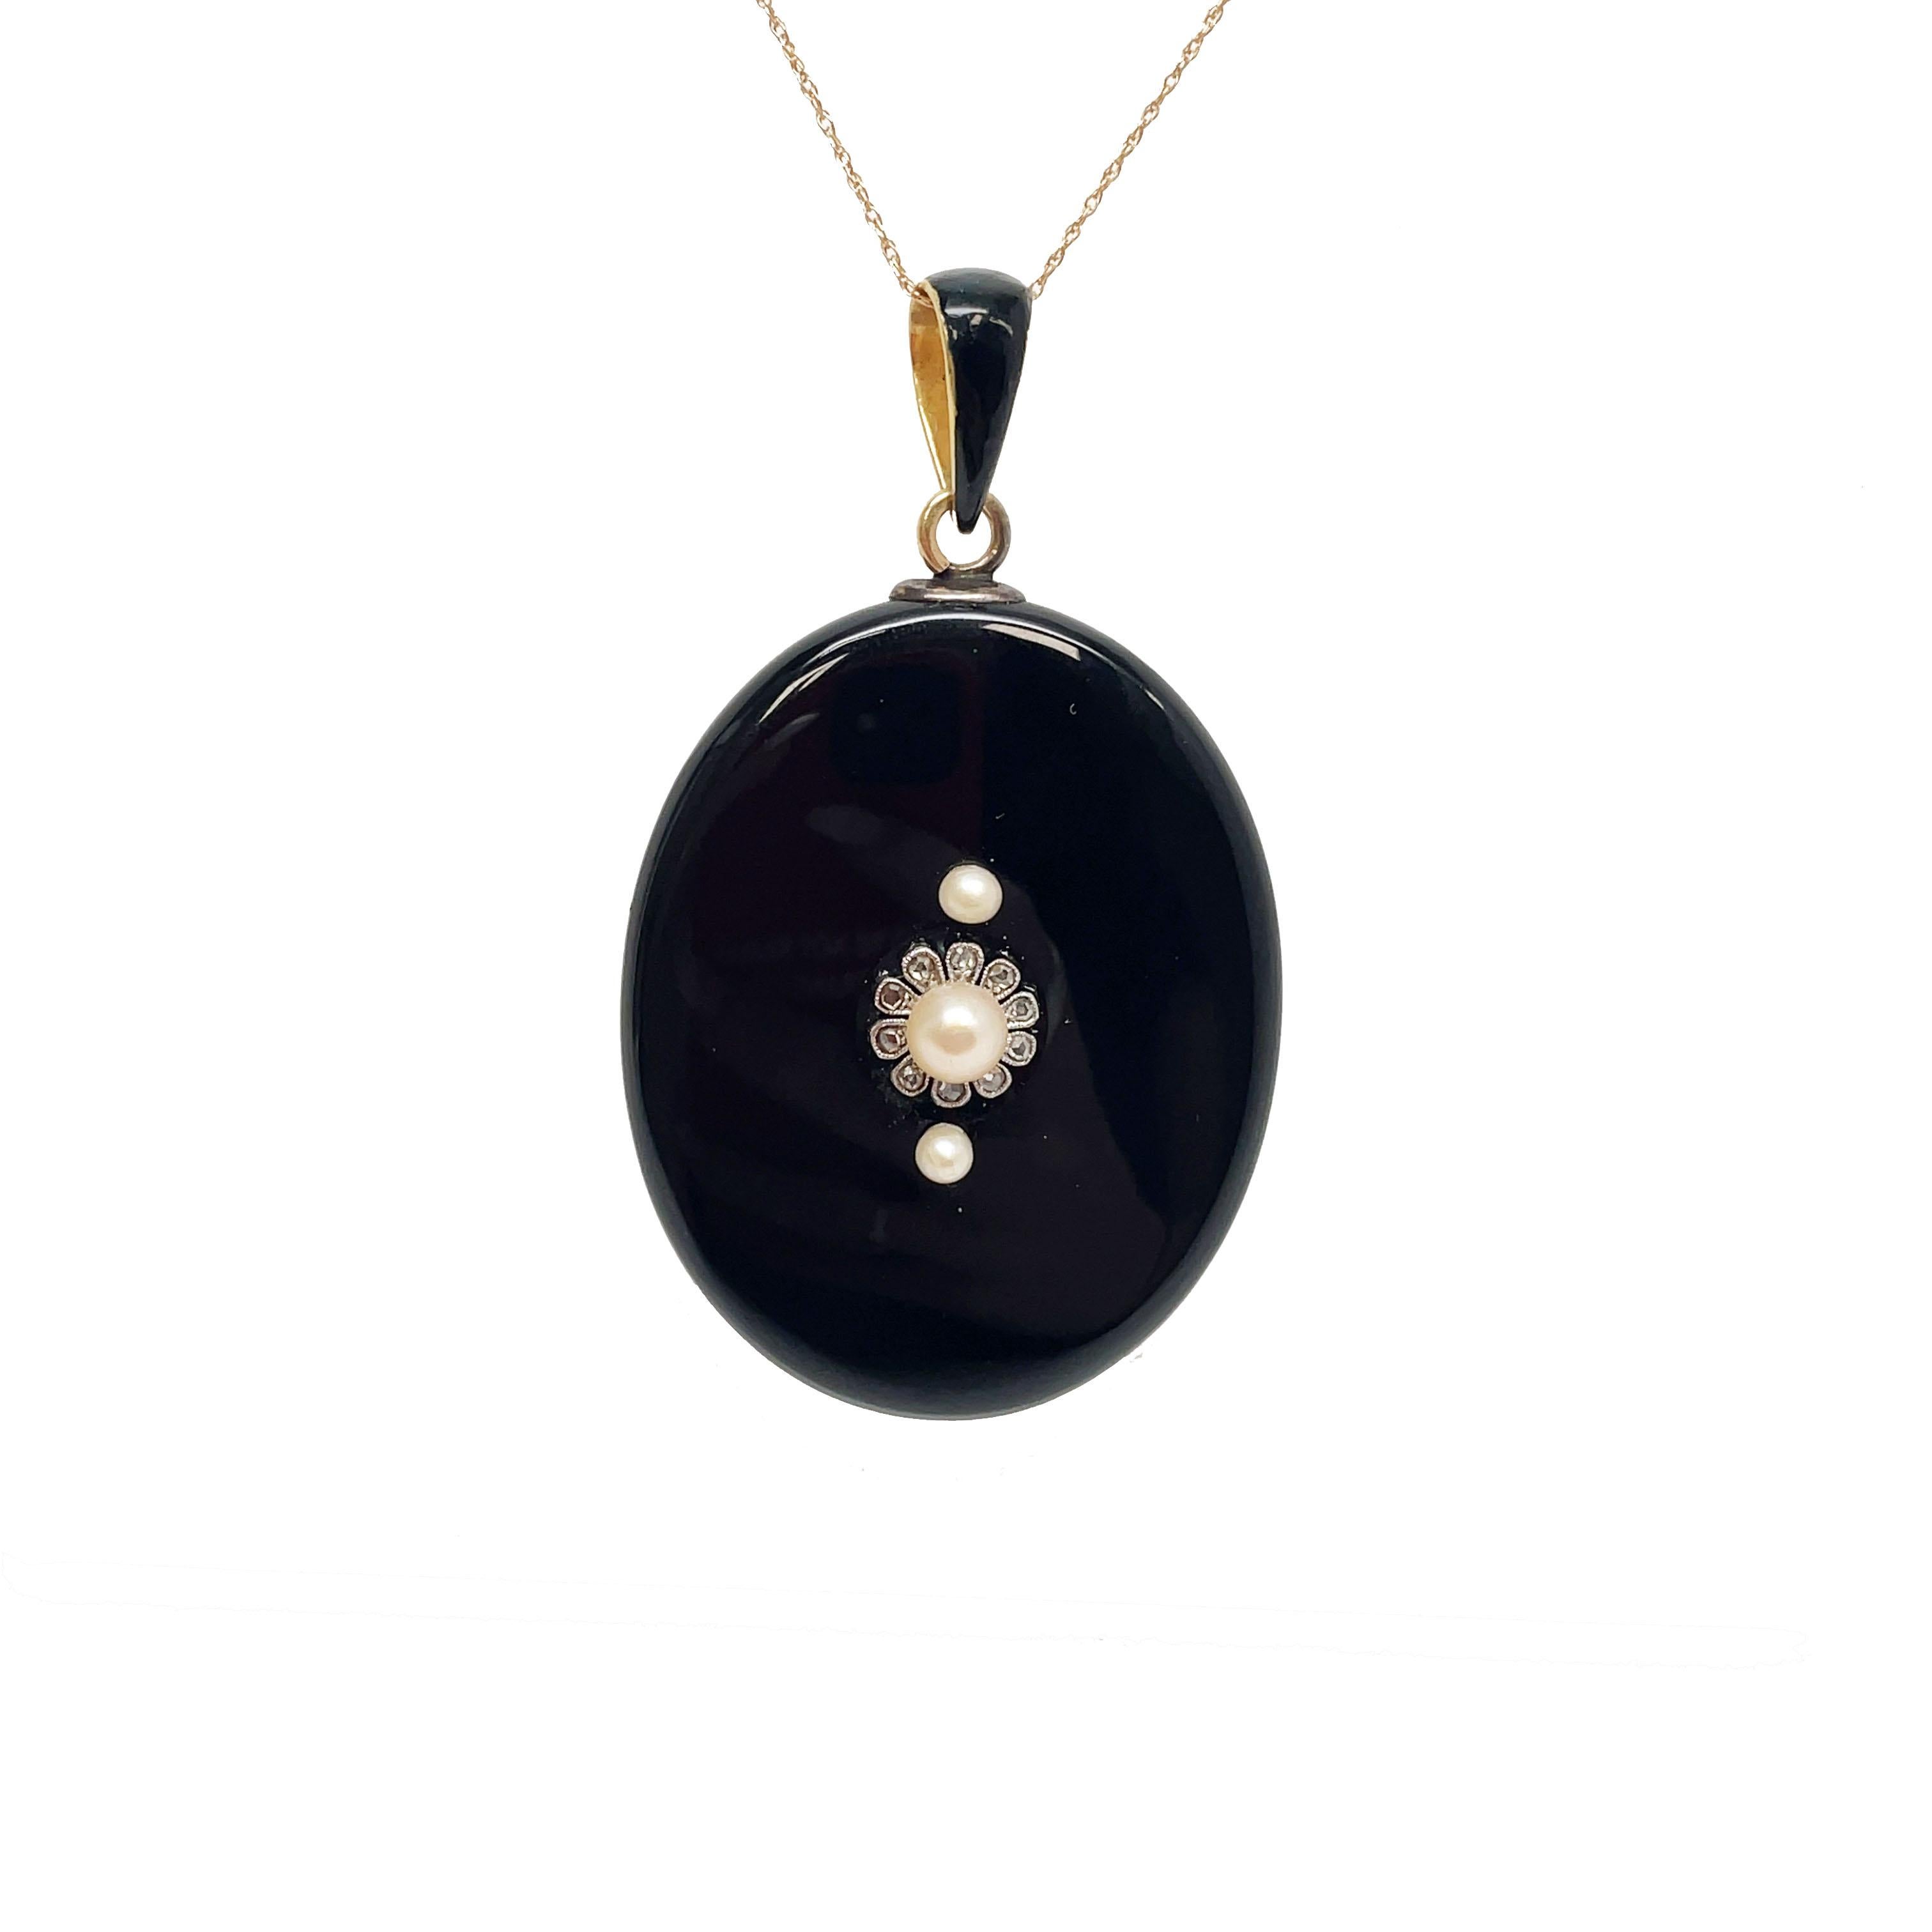 Dies ist eine spektakuläre 1890 Victorian Black Onyx, Diamant, und Perle Medaillon! Dieses Medaillon ist mit 10 schönen Diamanten im Rosenschliff besetzt, die eine der Perlen in einem schönen blütenblattartigen Muster umgeben. Das Medaillon besteht